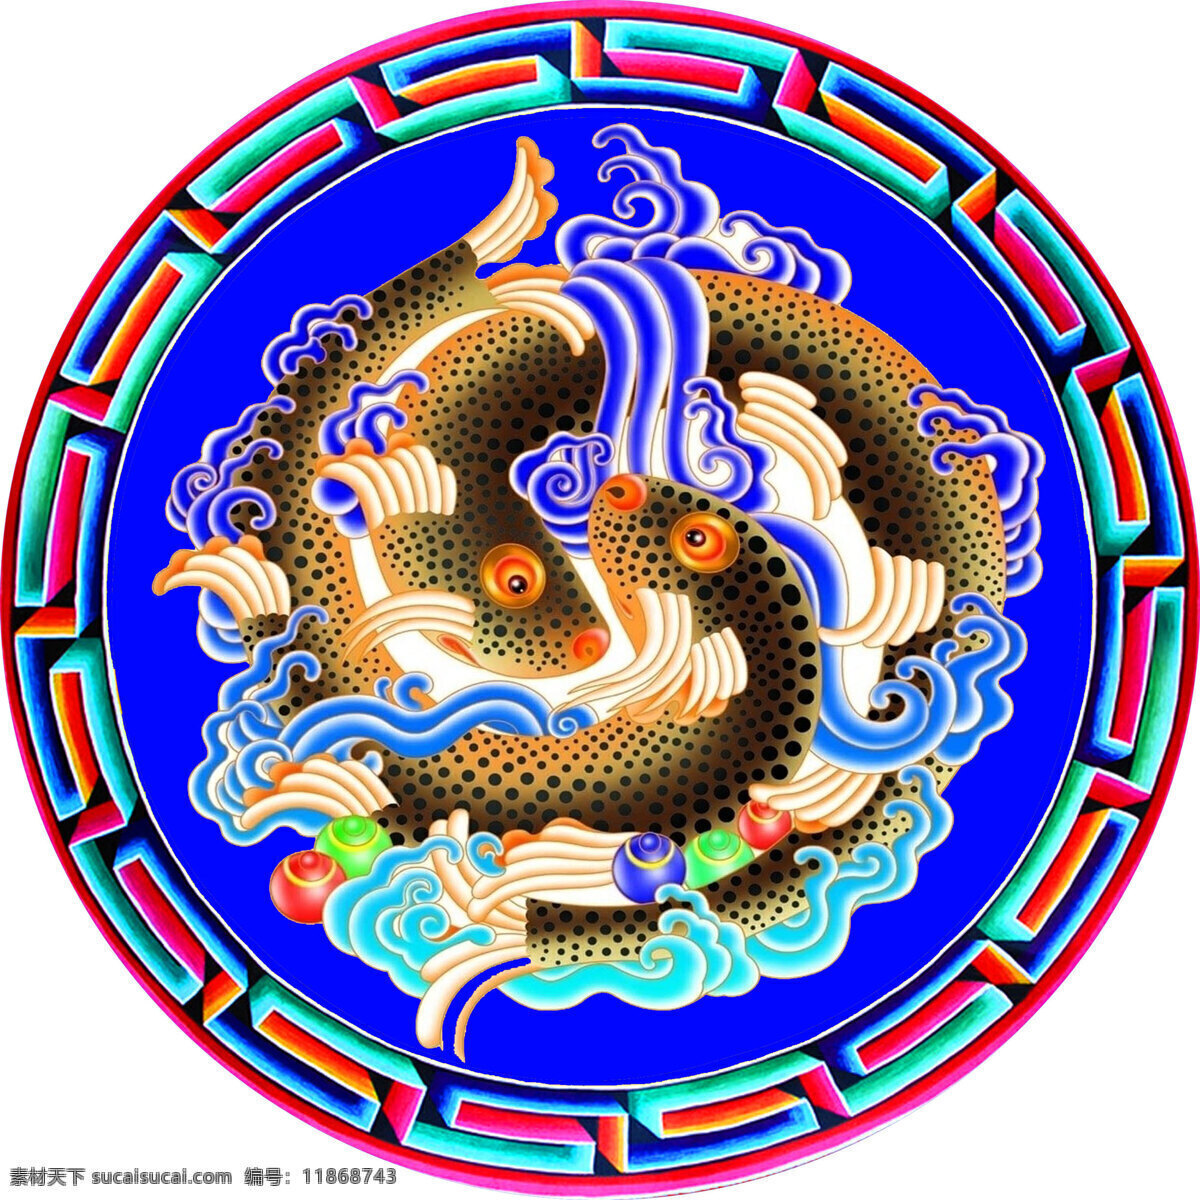 八宝 藏八宝 吉祥八宝 西藏 图案 花边 金鱼 宗教信仰 文化艺术